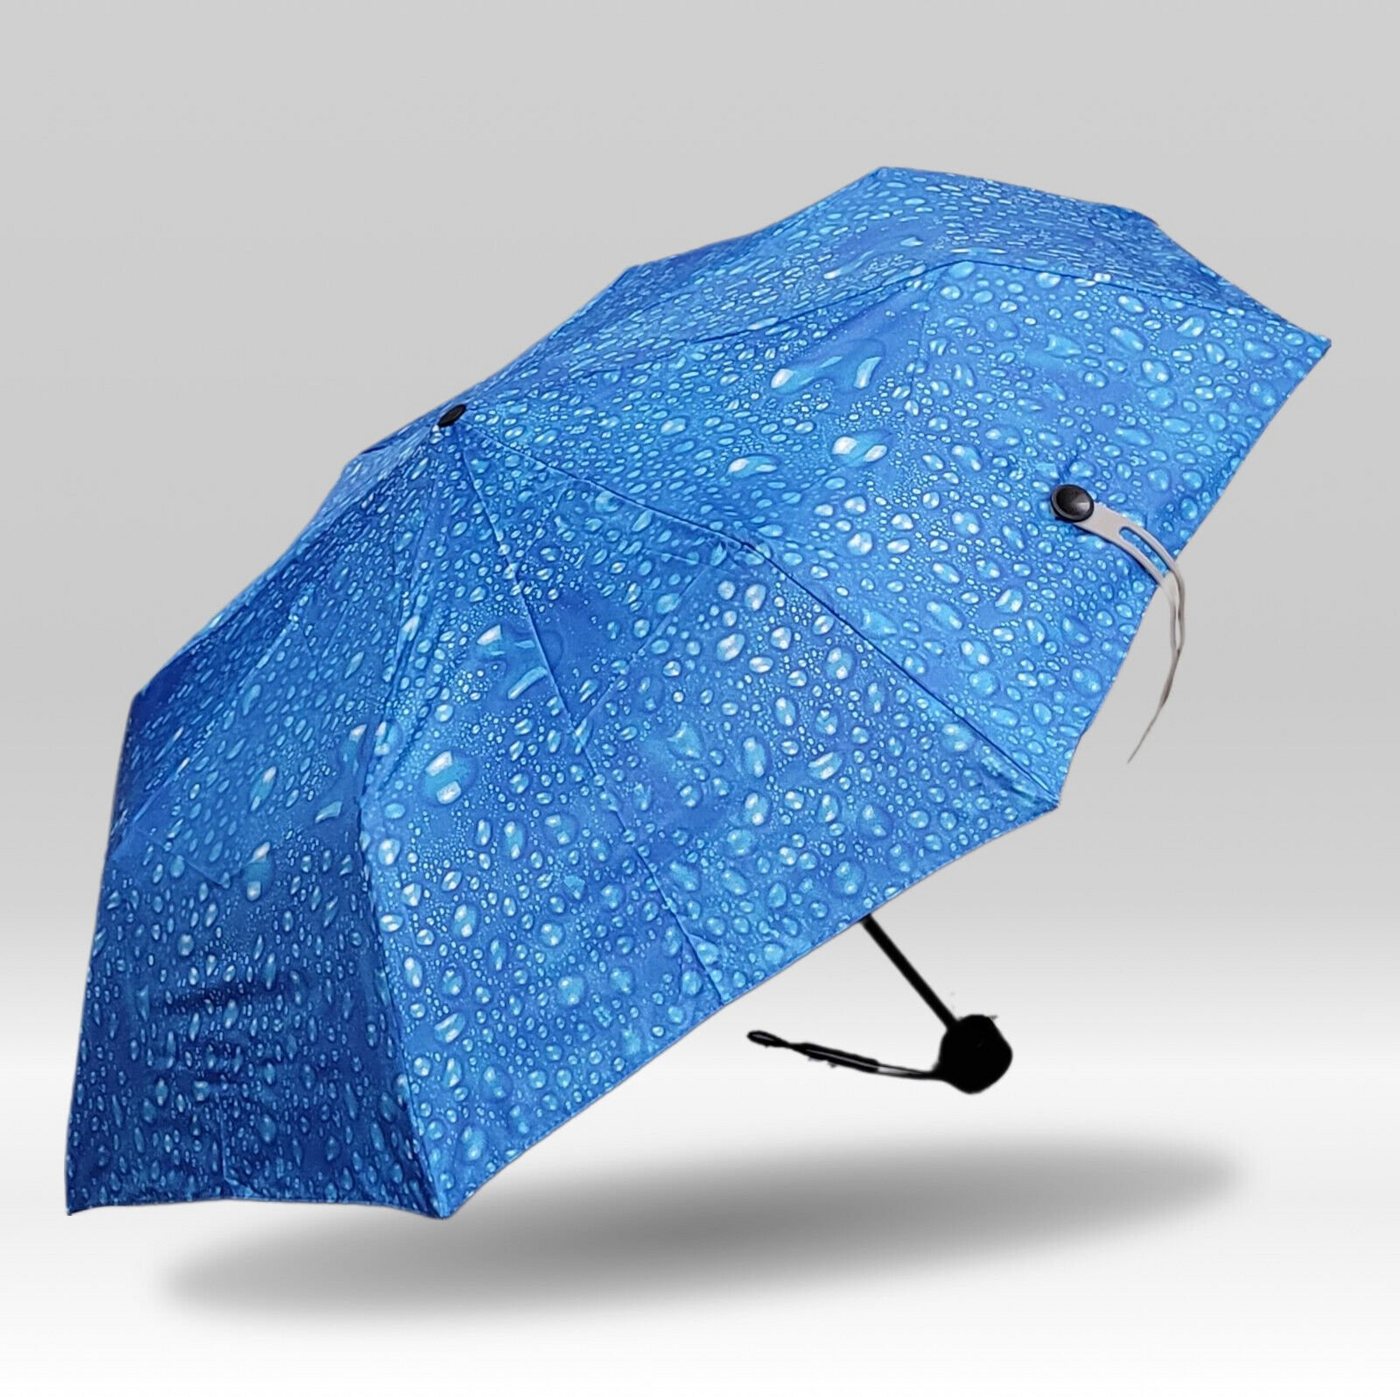 Dr. Neuser Taschenregenschirm kleiner kompakter Regenschirm ohne Automatik, wunderschöner Regentropfen-Druck, blau von Dr. Neuser